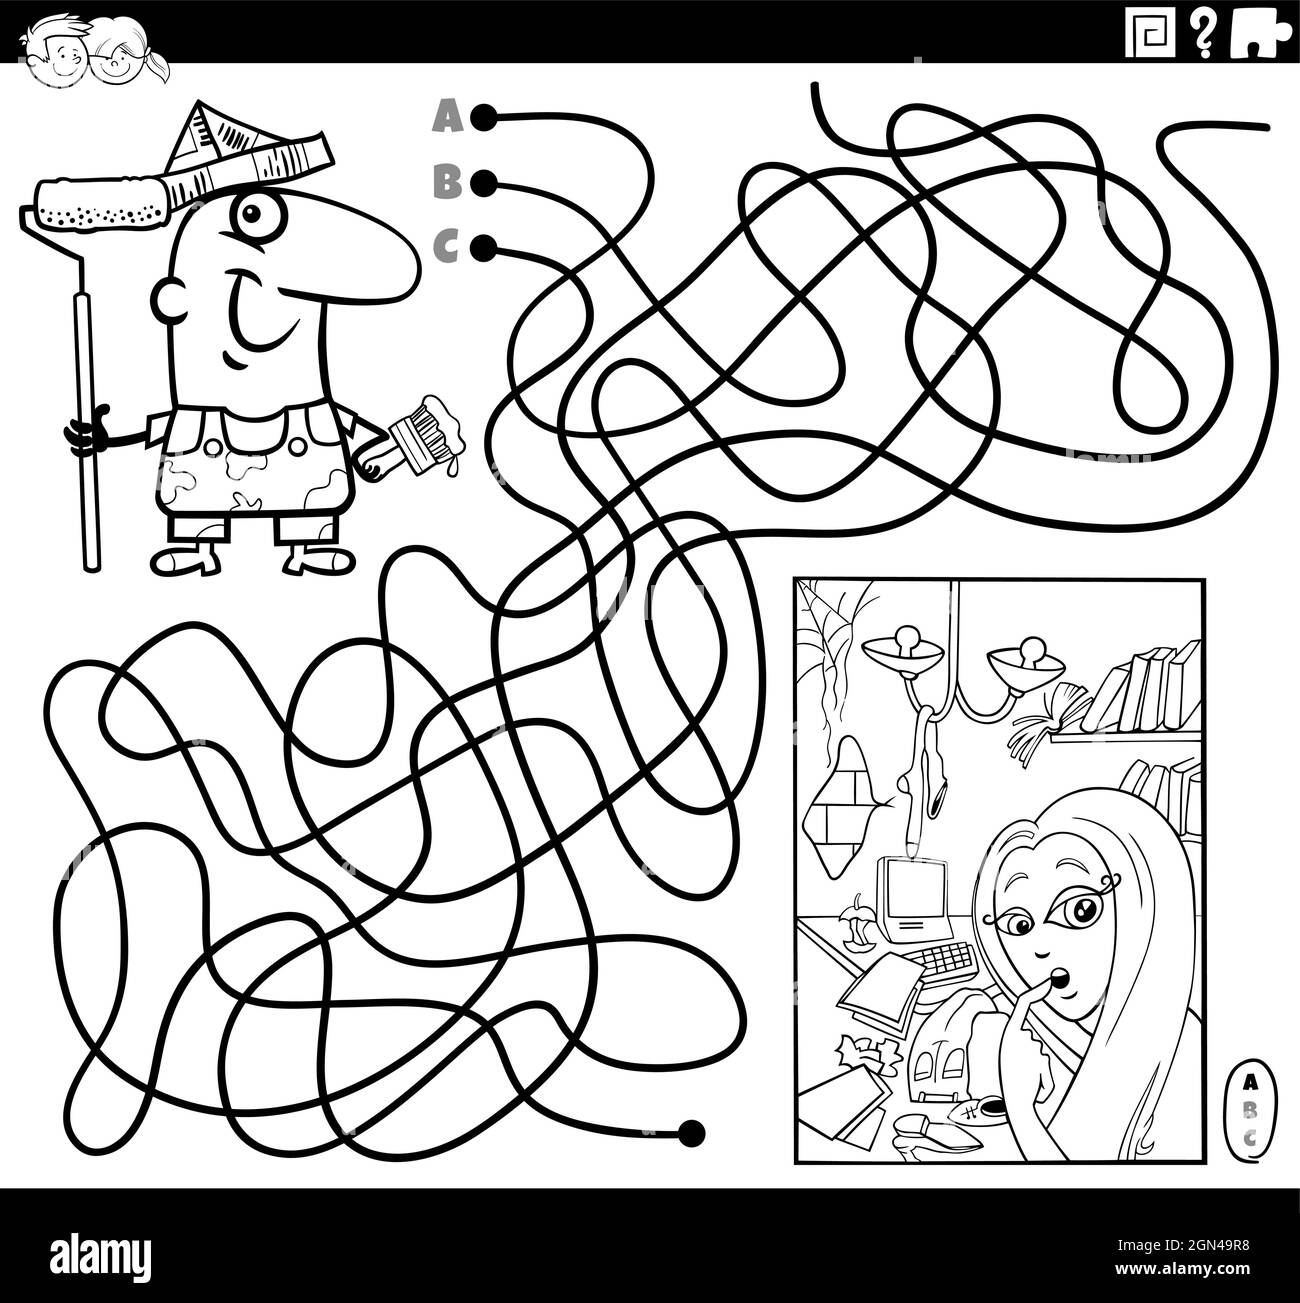 Schwarz-Weiß-Cartoon-Illustration von Linien Labyrinth Puzzle-Spiel mit Maler-Charakter und Wohnung für die Renovierung Malbuch Seite Stock Vektor